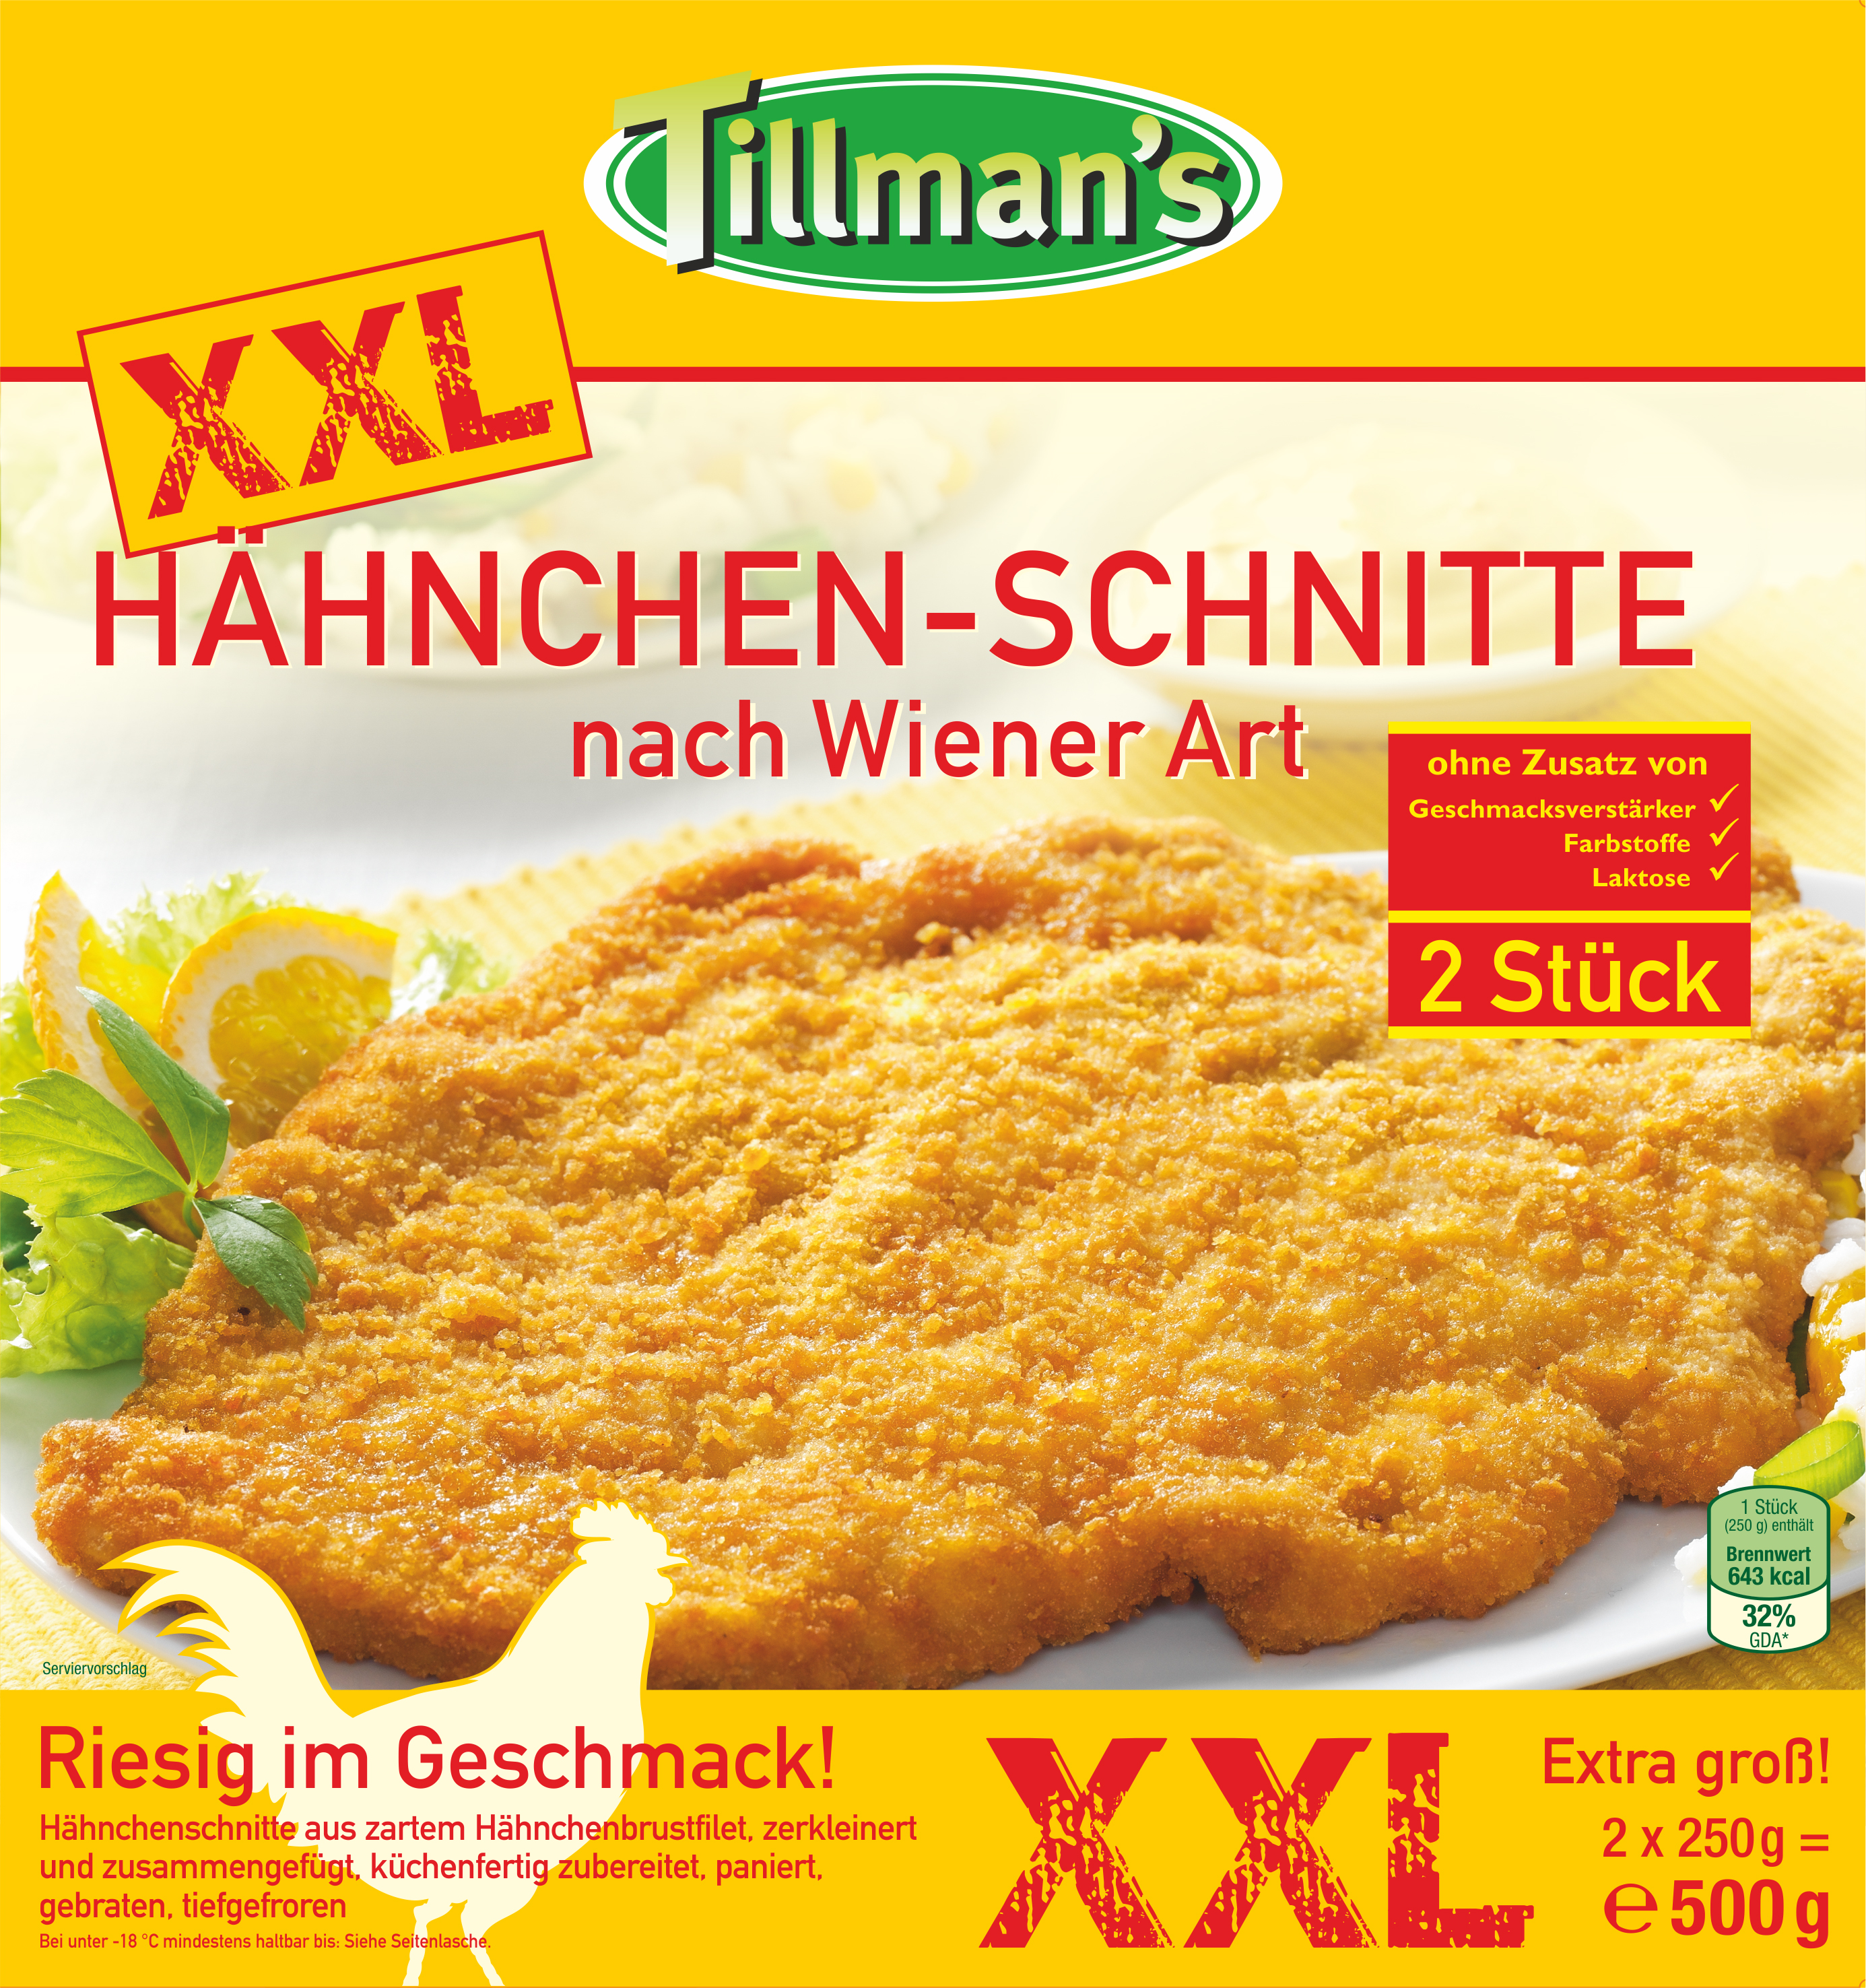 XXL Hähnchen-Schnitte nach Wiener Art - TK (2 x 250 Gramm) Tillman's  Convenience GmbH Huhn - verarbeitet Lebensmittel / Getränke / Tabakwaren  Fleisch / Wurst / Geflügel Fleisch und Geflügel - verarbeitet · mynetfair